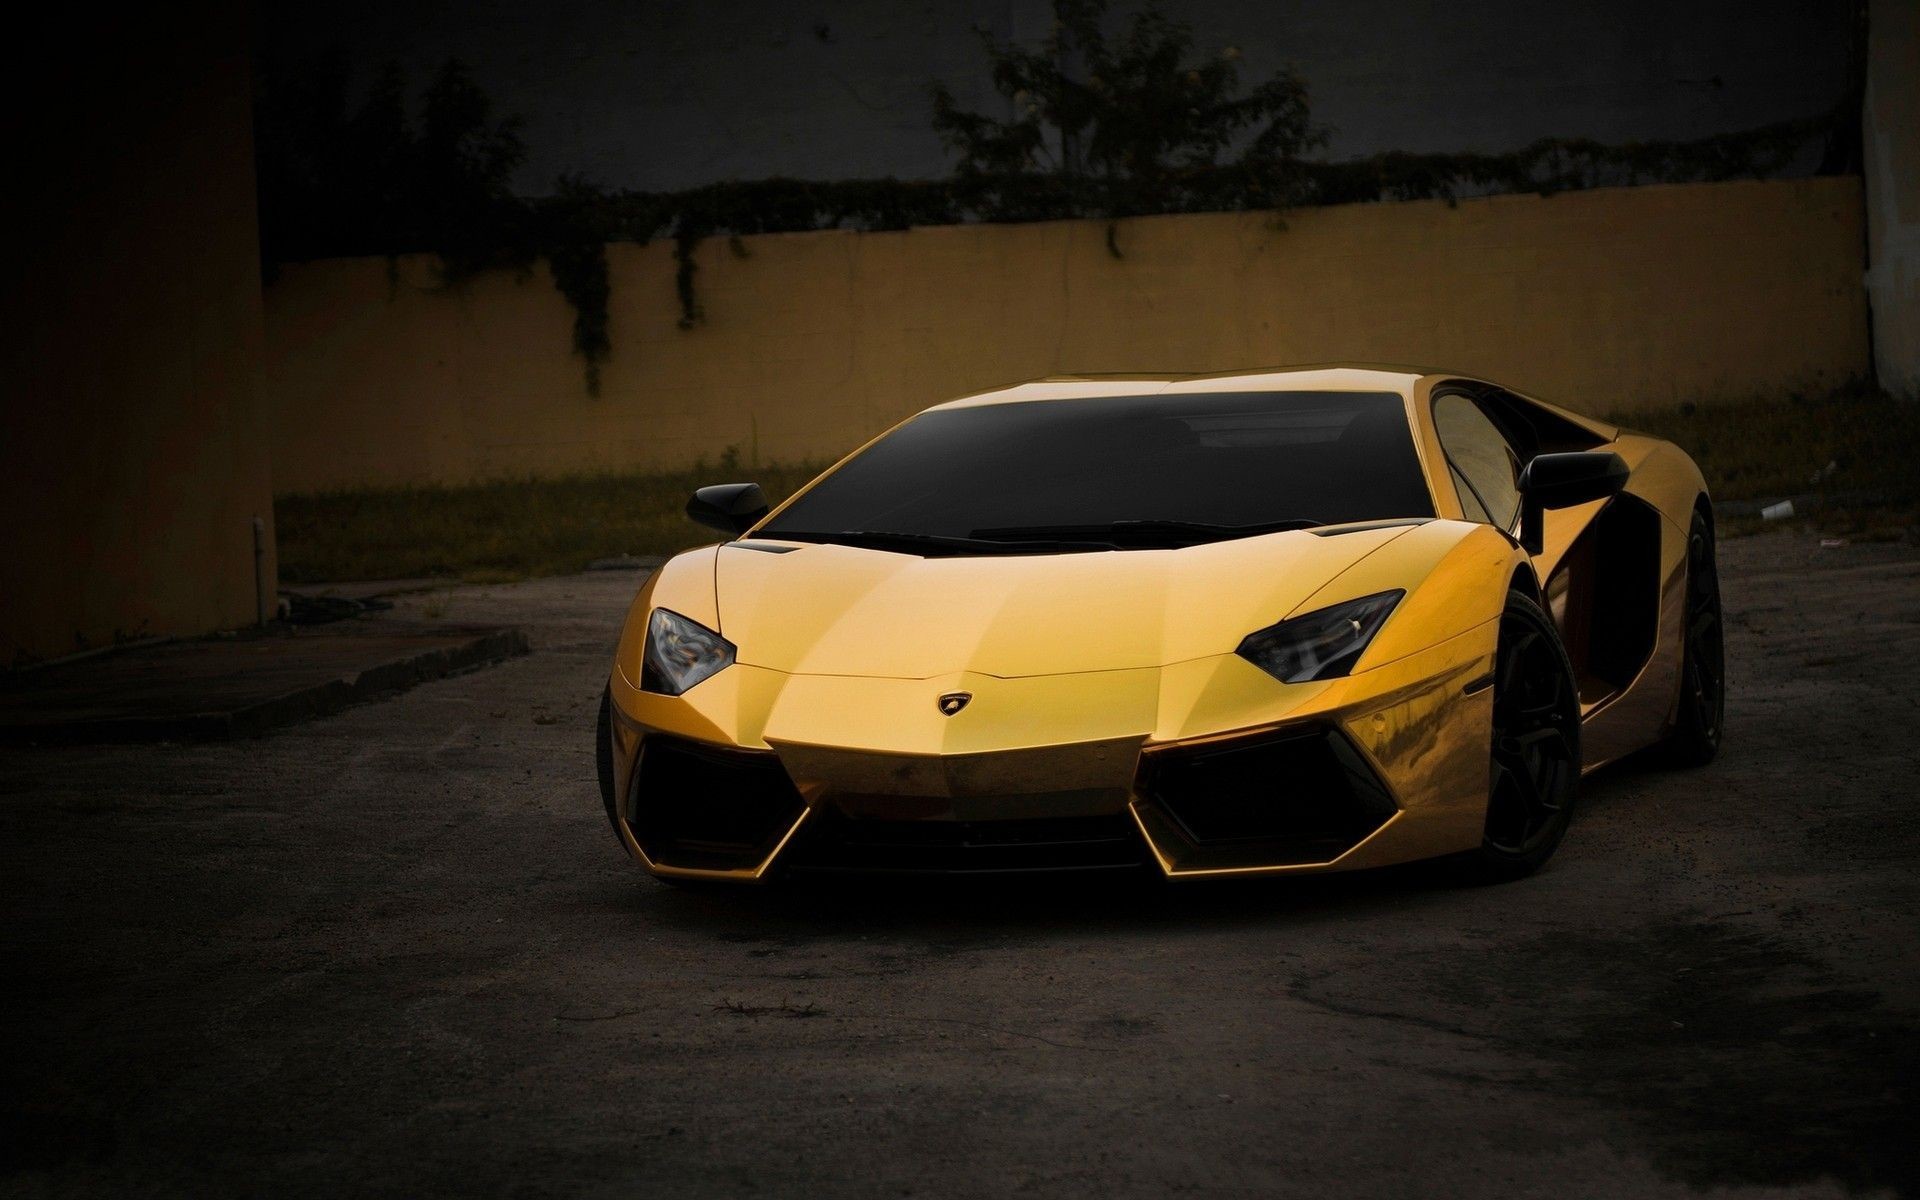 Hình nền Lamborghini vàng - Tuyệt vời hơn cả những gì bạn tưởng tượng. Hình nền Lamborghini vàng độc đáo và lộng lẫy đang chờ đón bạn khám phá. Hãy tải xuống ngay ngay hôm nay để cảm nhận trọn vẹn sức hút của siêu xe vàng.